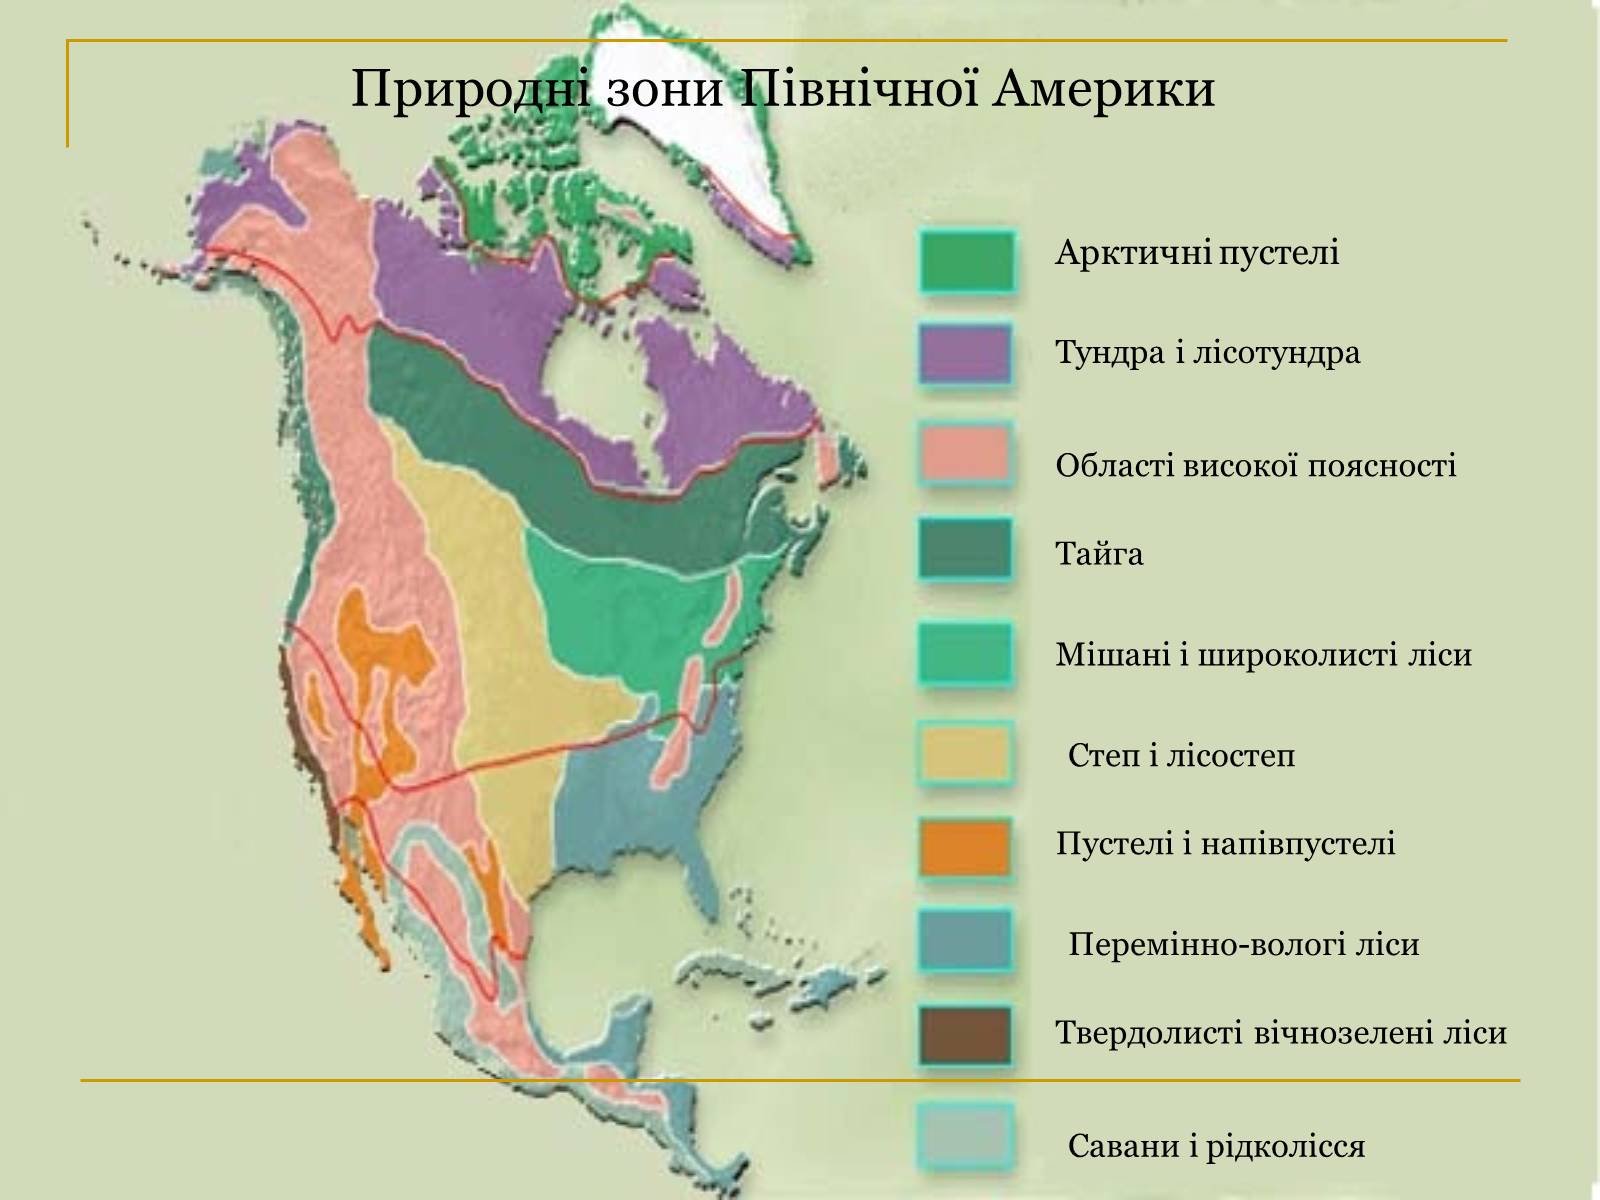 Какой пояс занимает большую часть северной америки. Карта природных зон Сев Америки. Карта природных зон Северной Америки. Карта природных зон Северной Америки 7 класс география. Климатические пояса и природные зоны Северной Америки.